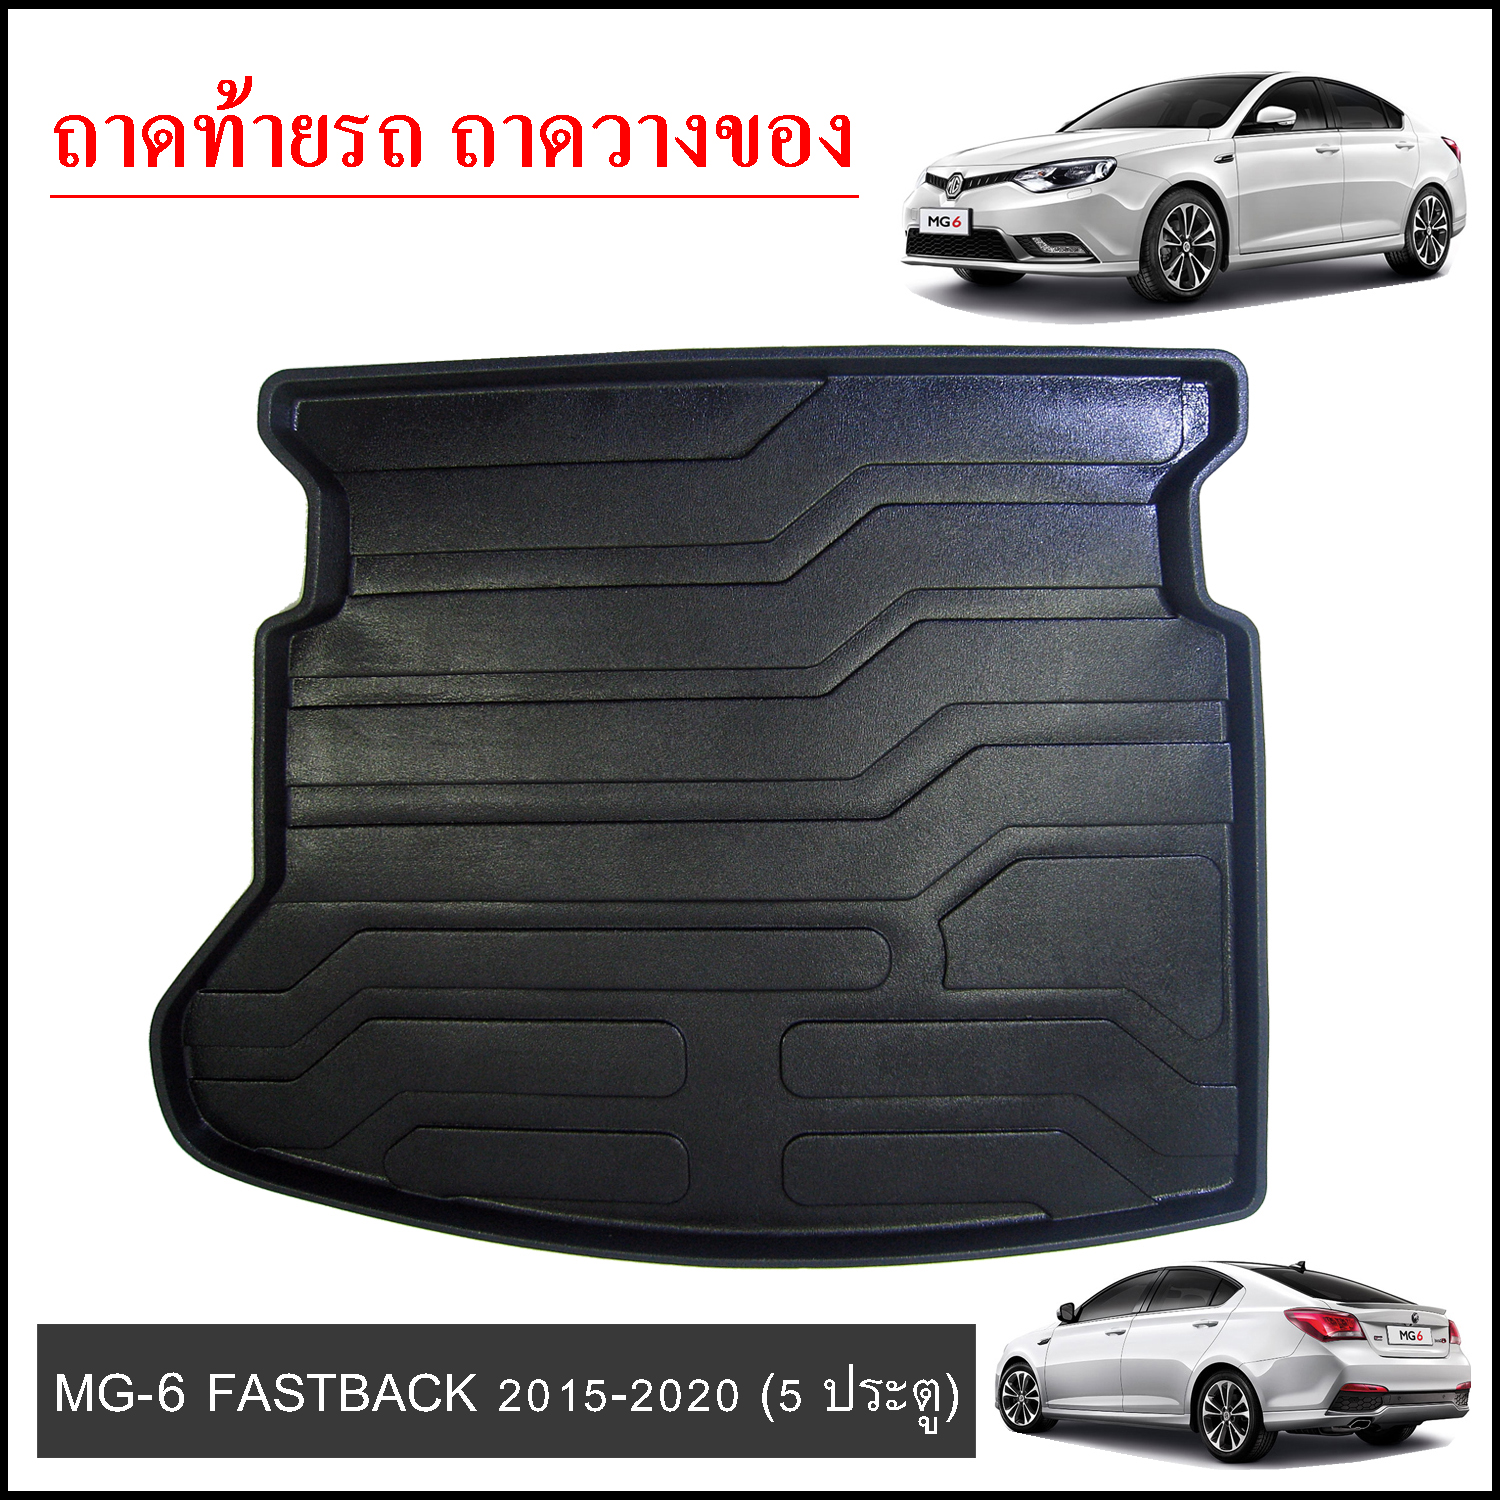 ถาดท้ายวางของ MG6 Fastback 2015-2020